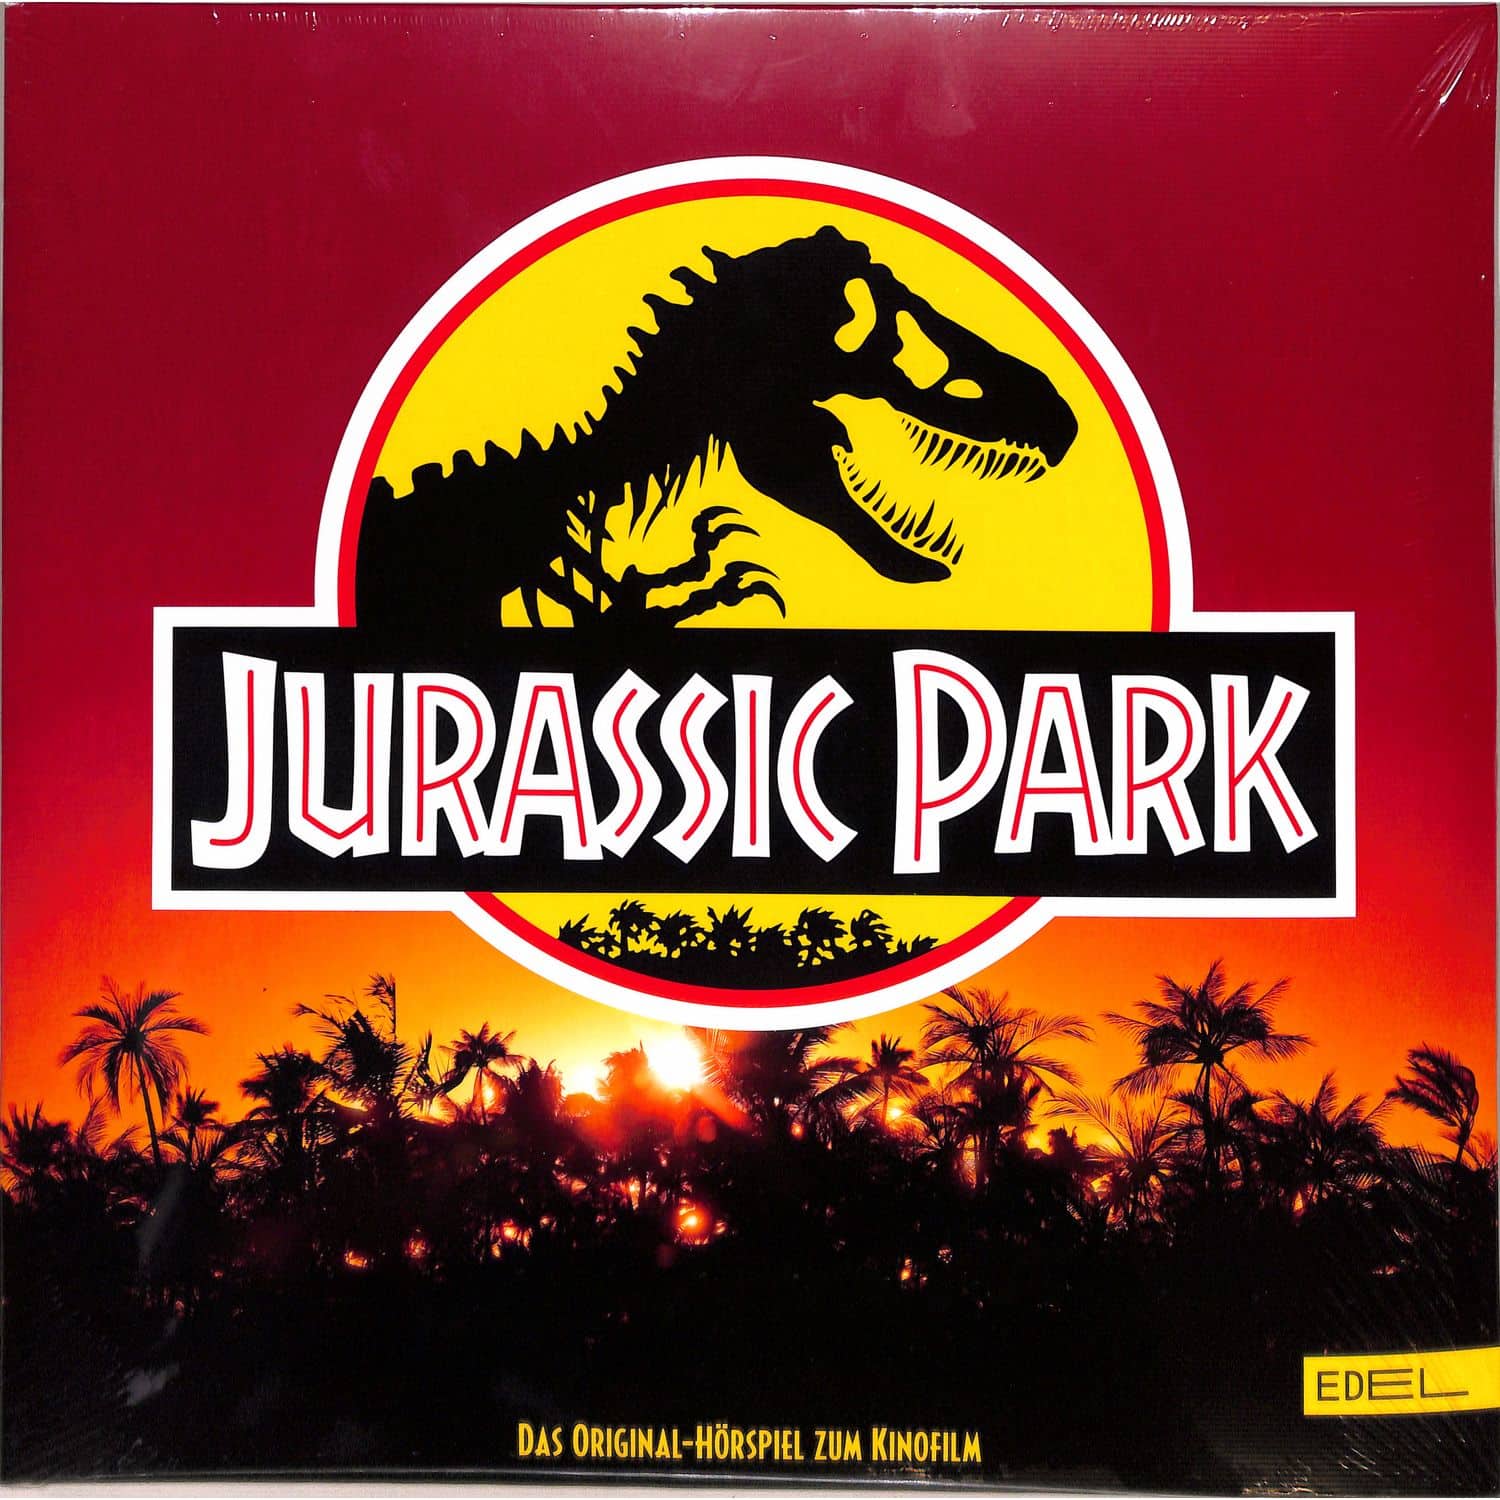 Jurassic Park - HRSPIEL ZUM KINOFILM 